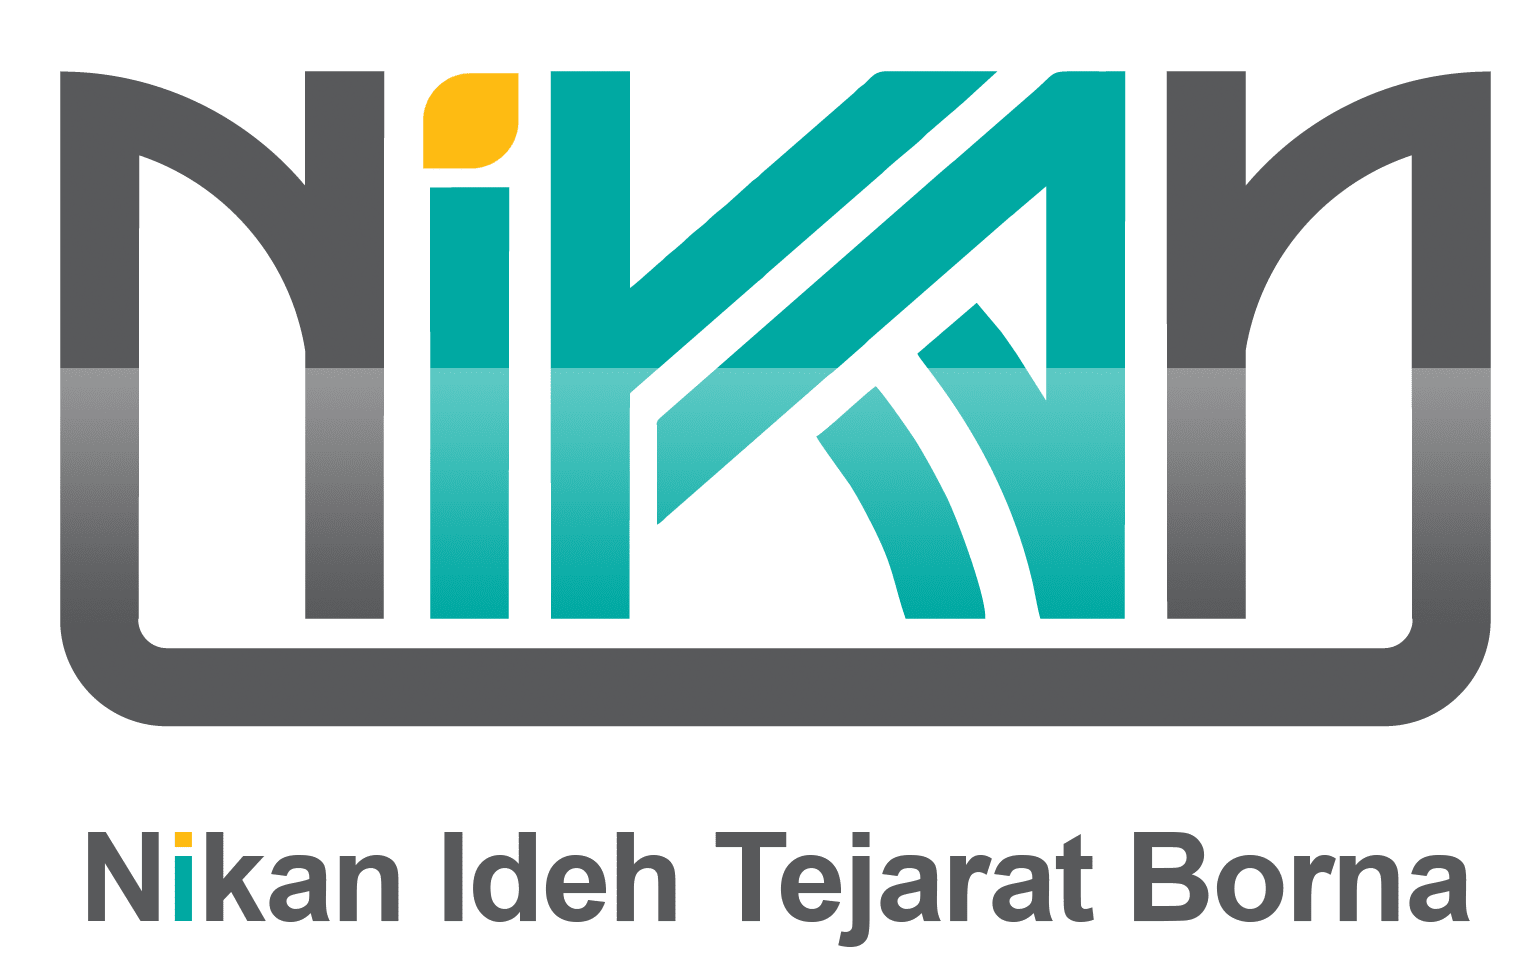 Nikan logo